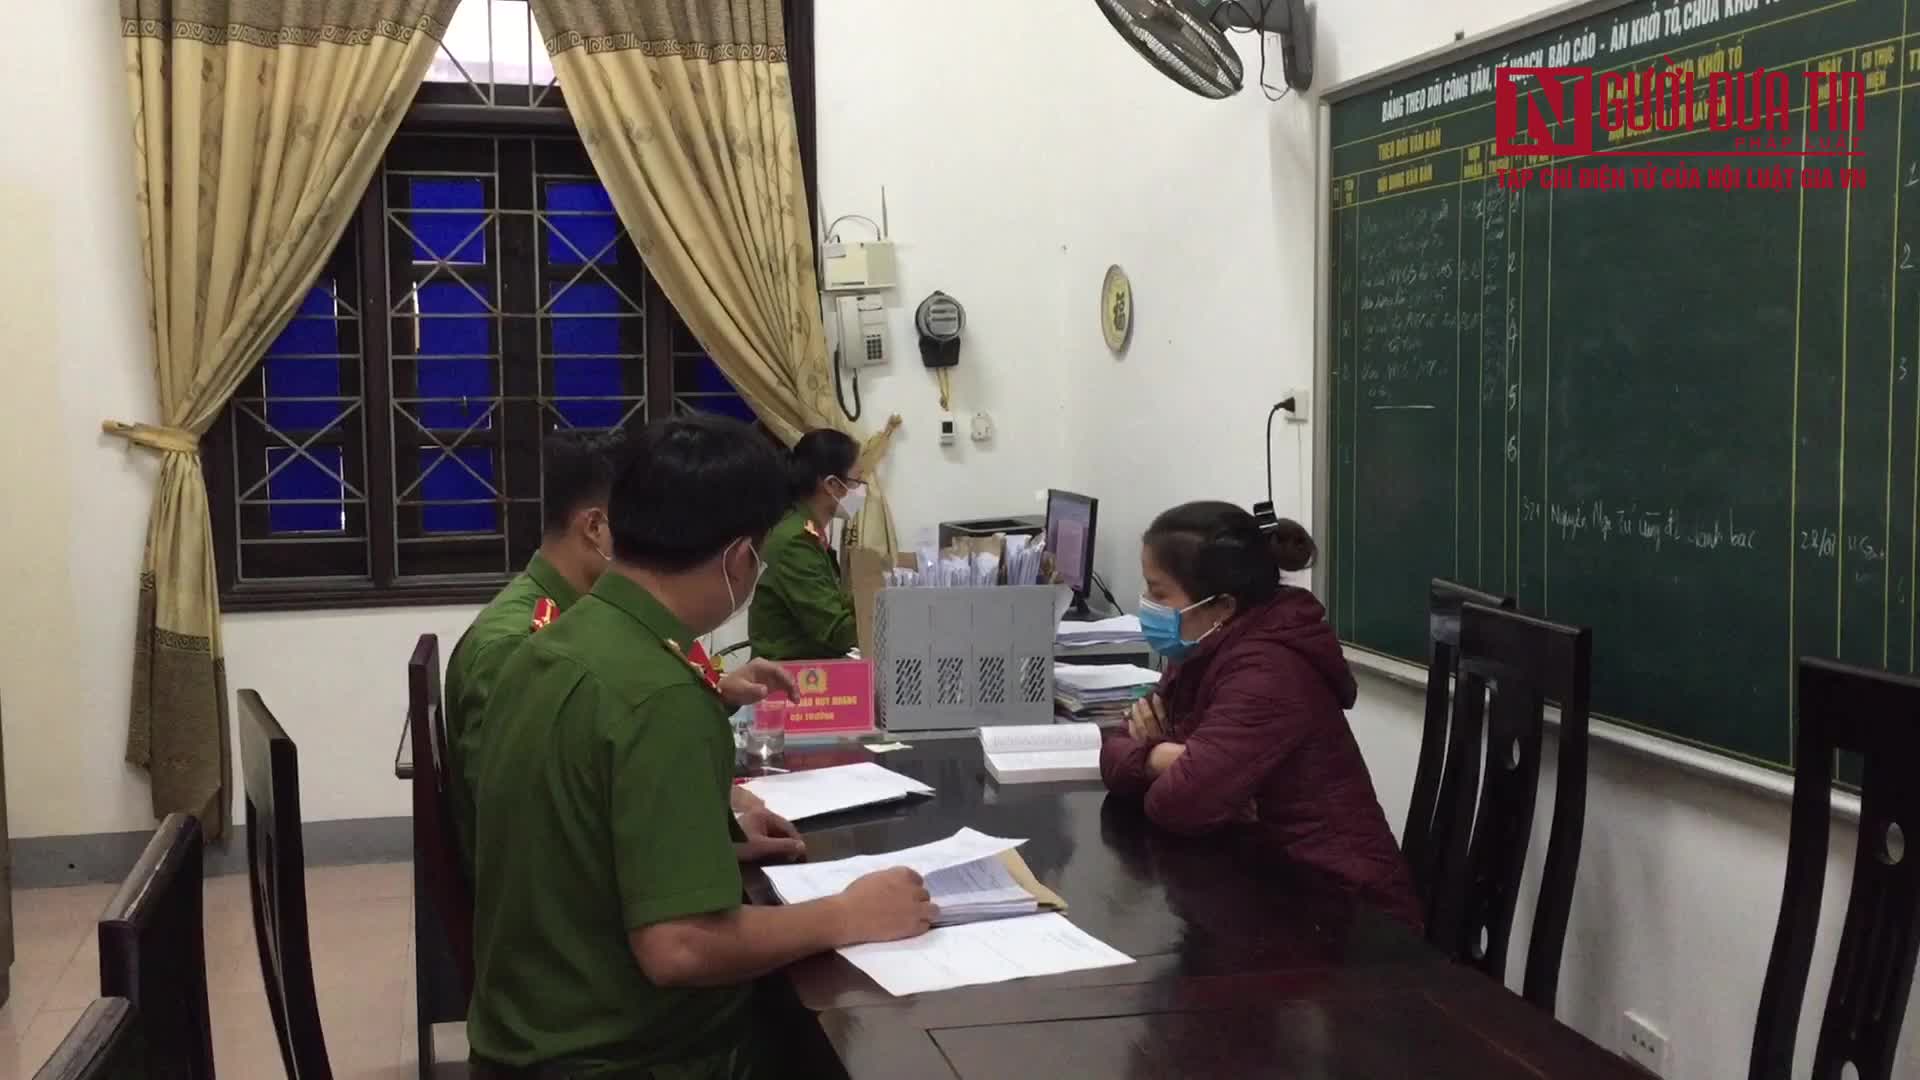 An ninh - Hình sự - Vụ “ăn chặn” tiền hỗ trợ do bị bão lụt ở Nghệ An: Bắt tạm giam kế toán UBND xã Khai Sơn